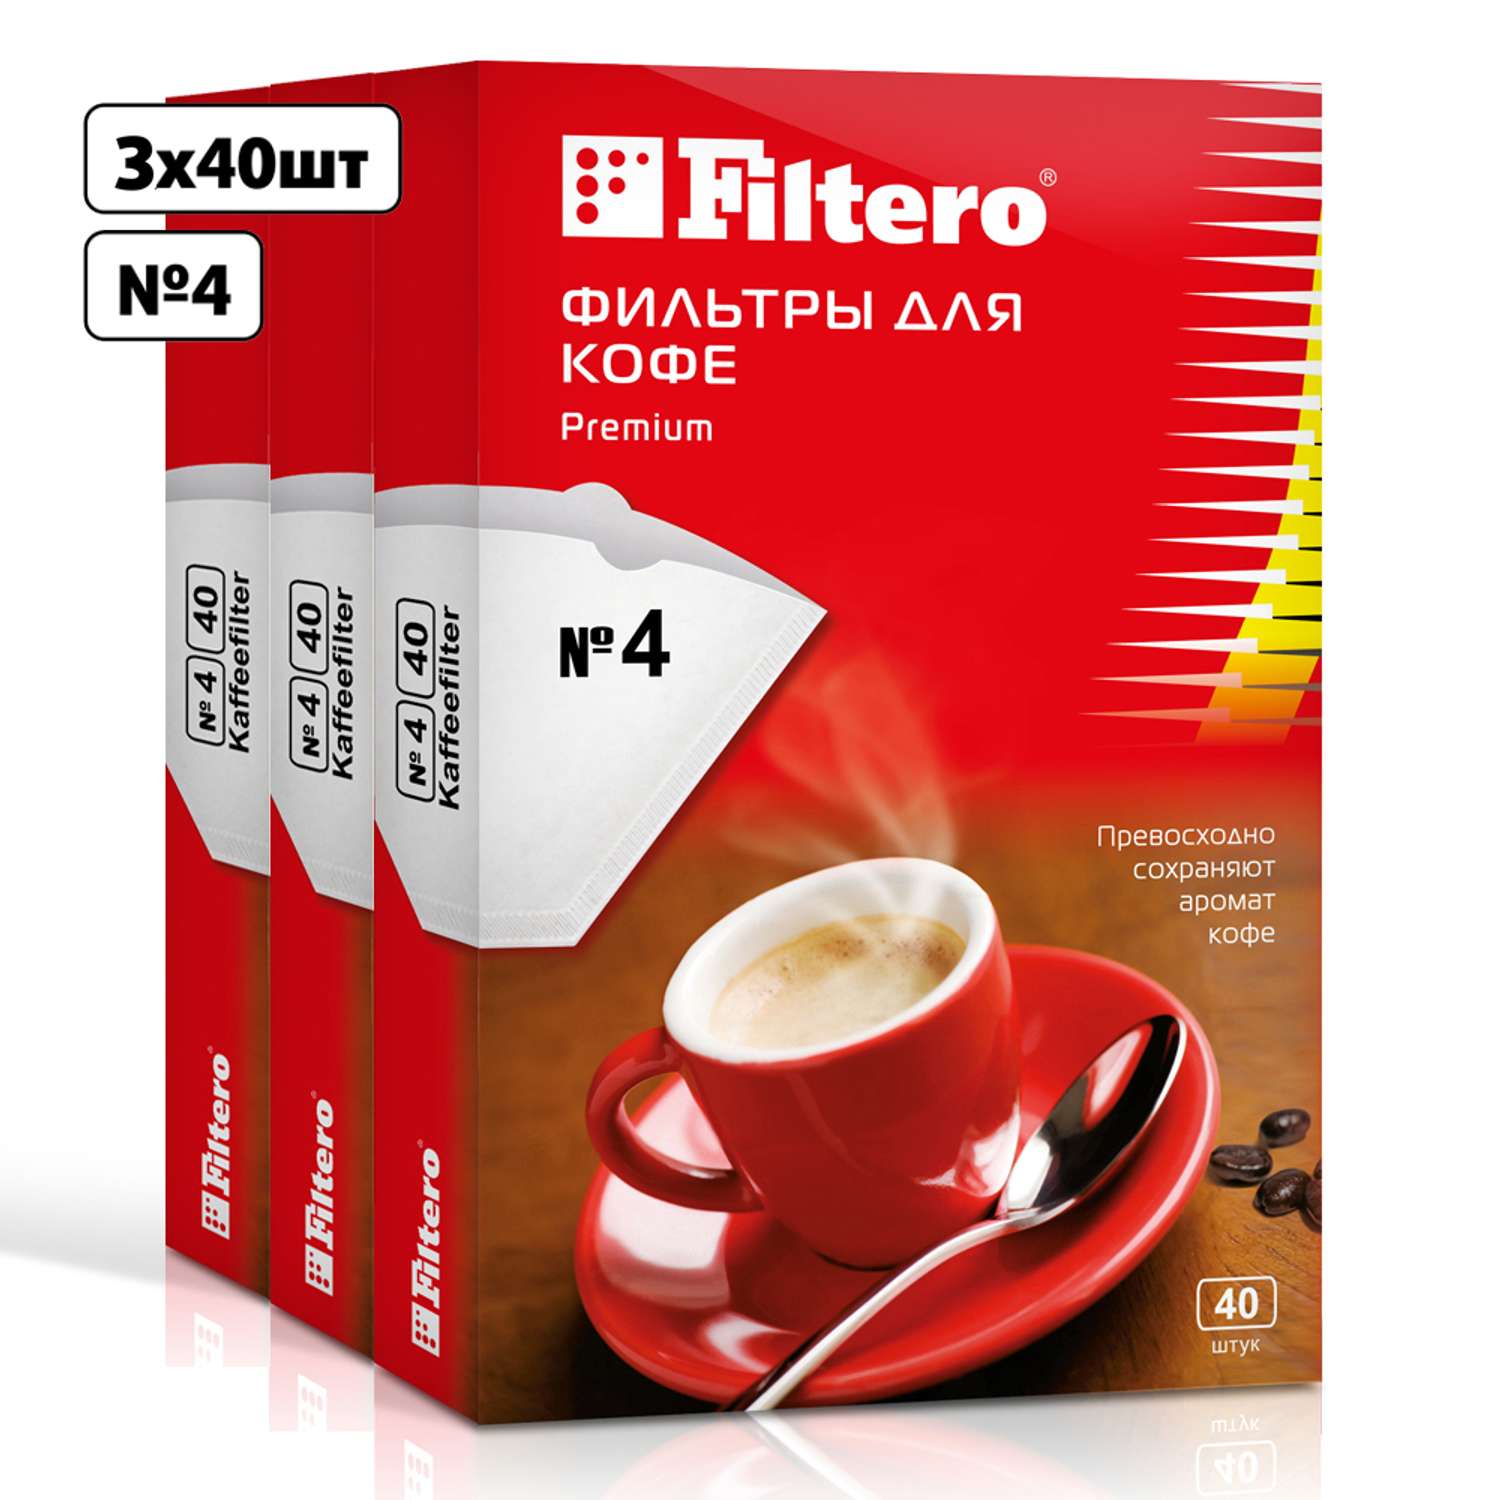 Комплект фильтров Filtero для кофеварки №4/120шт белые Premium - фото 1